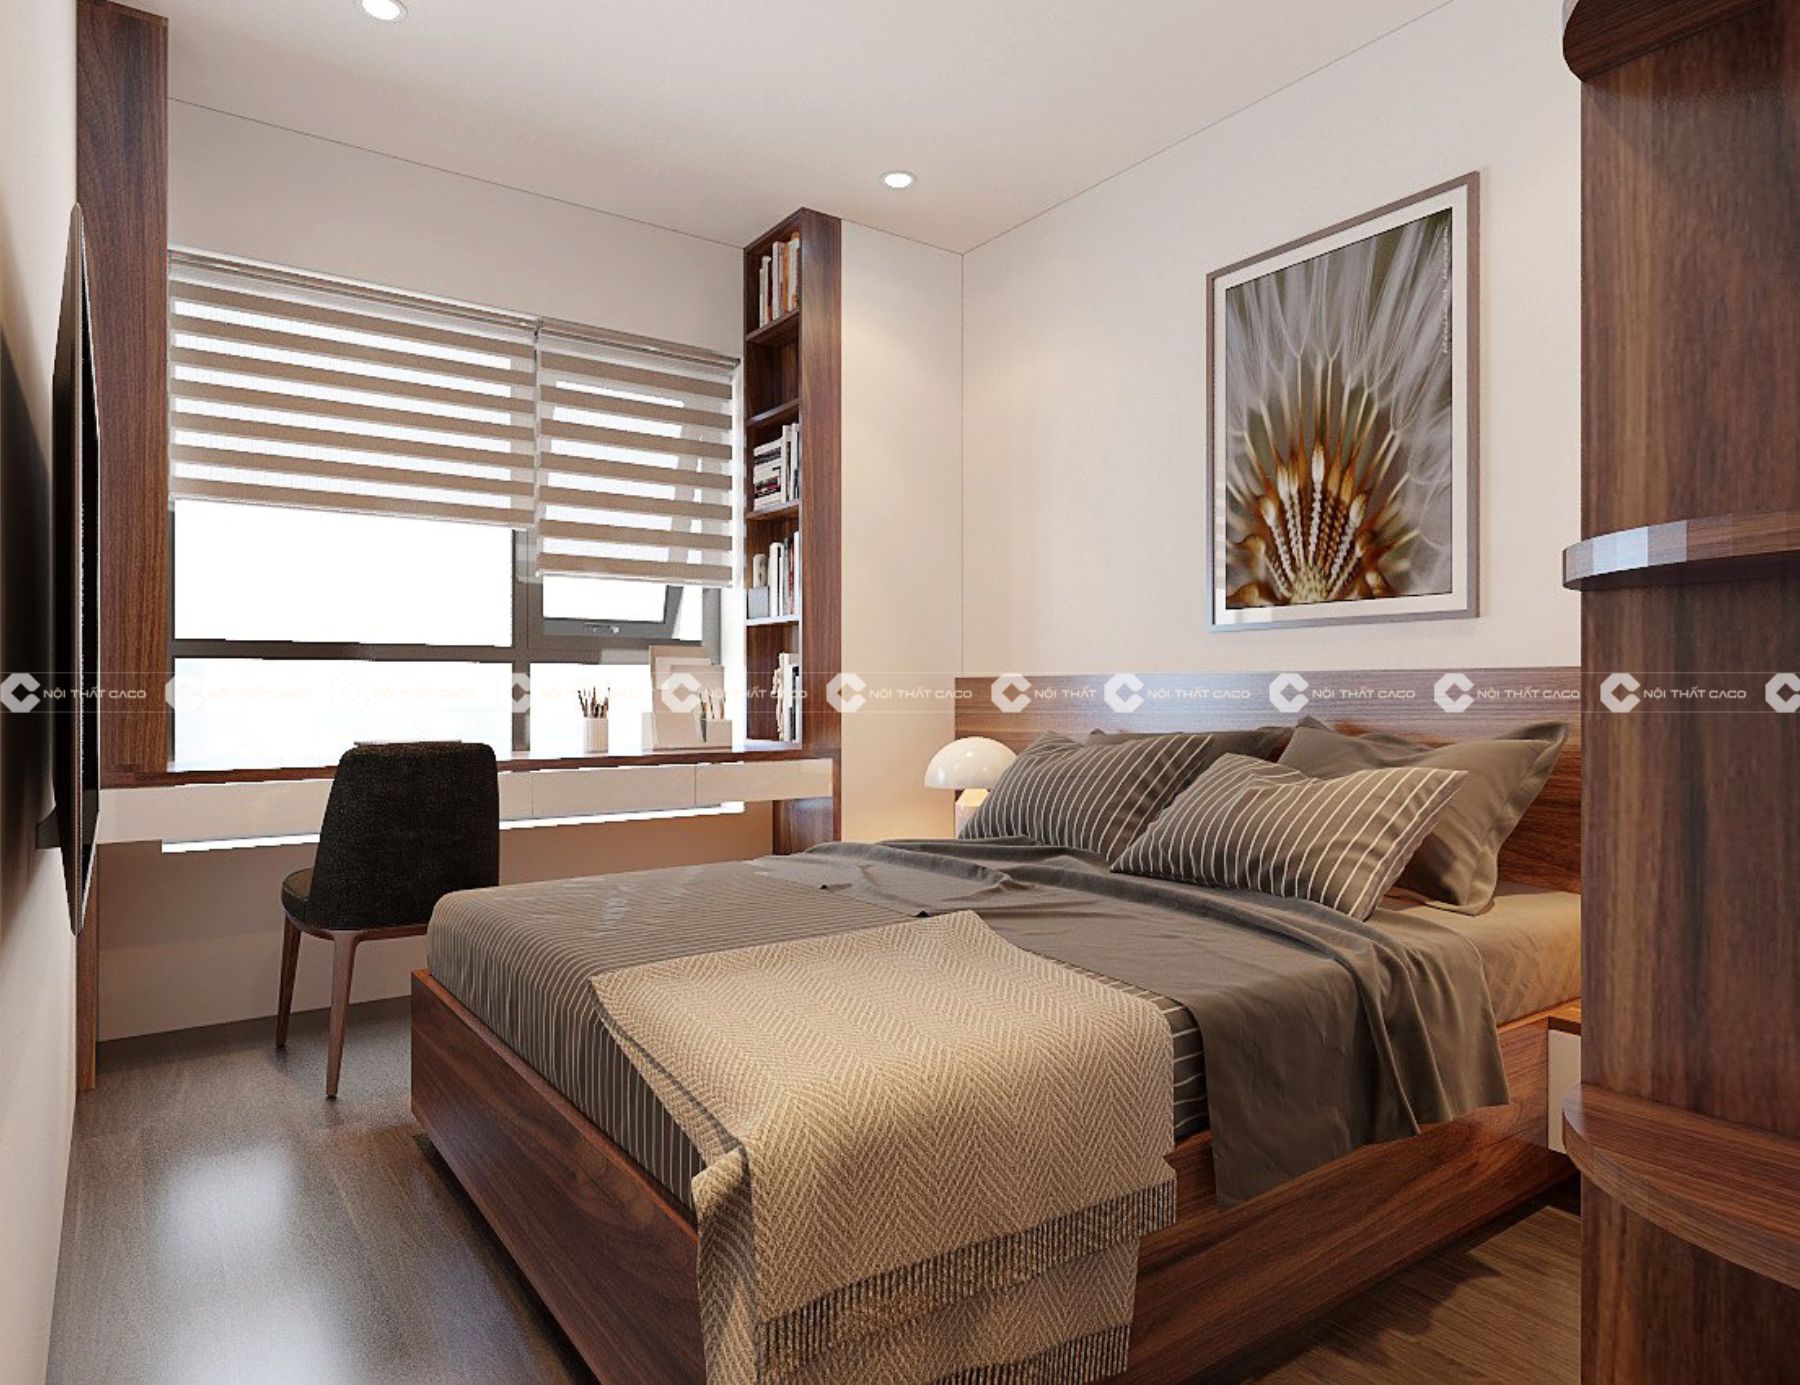 Thiết kế thi công nội thất phòng ngủ đẹp theo phong cách hiện đại tại Quận 7 10